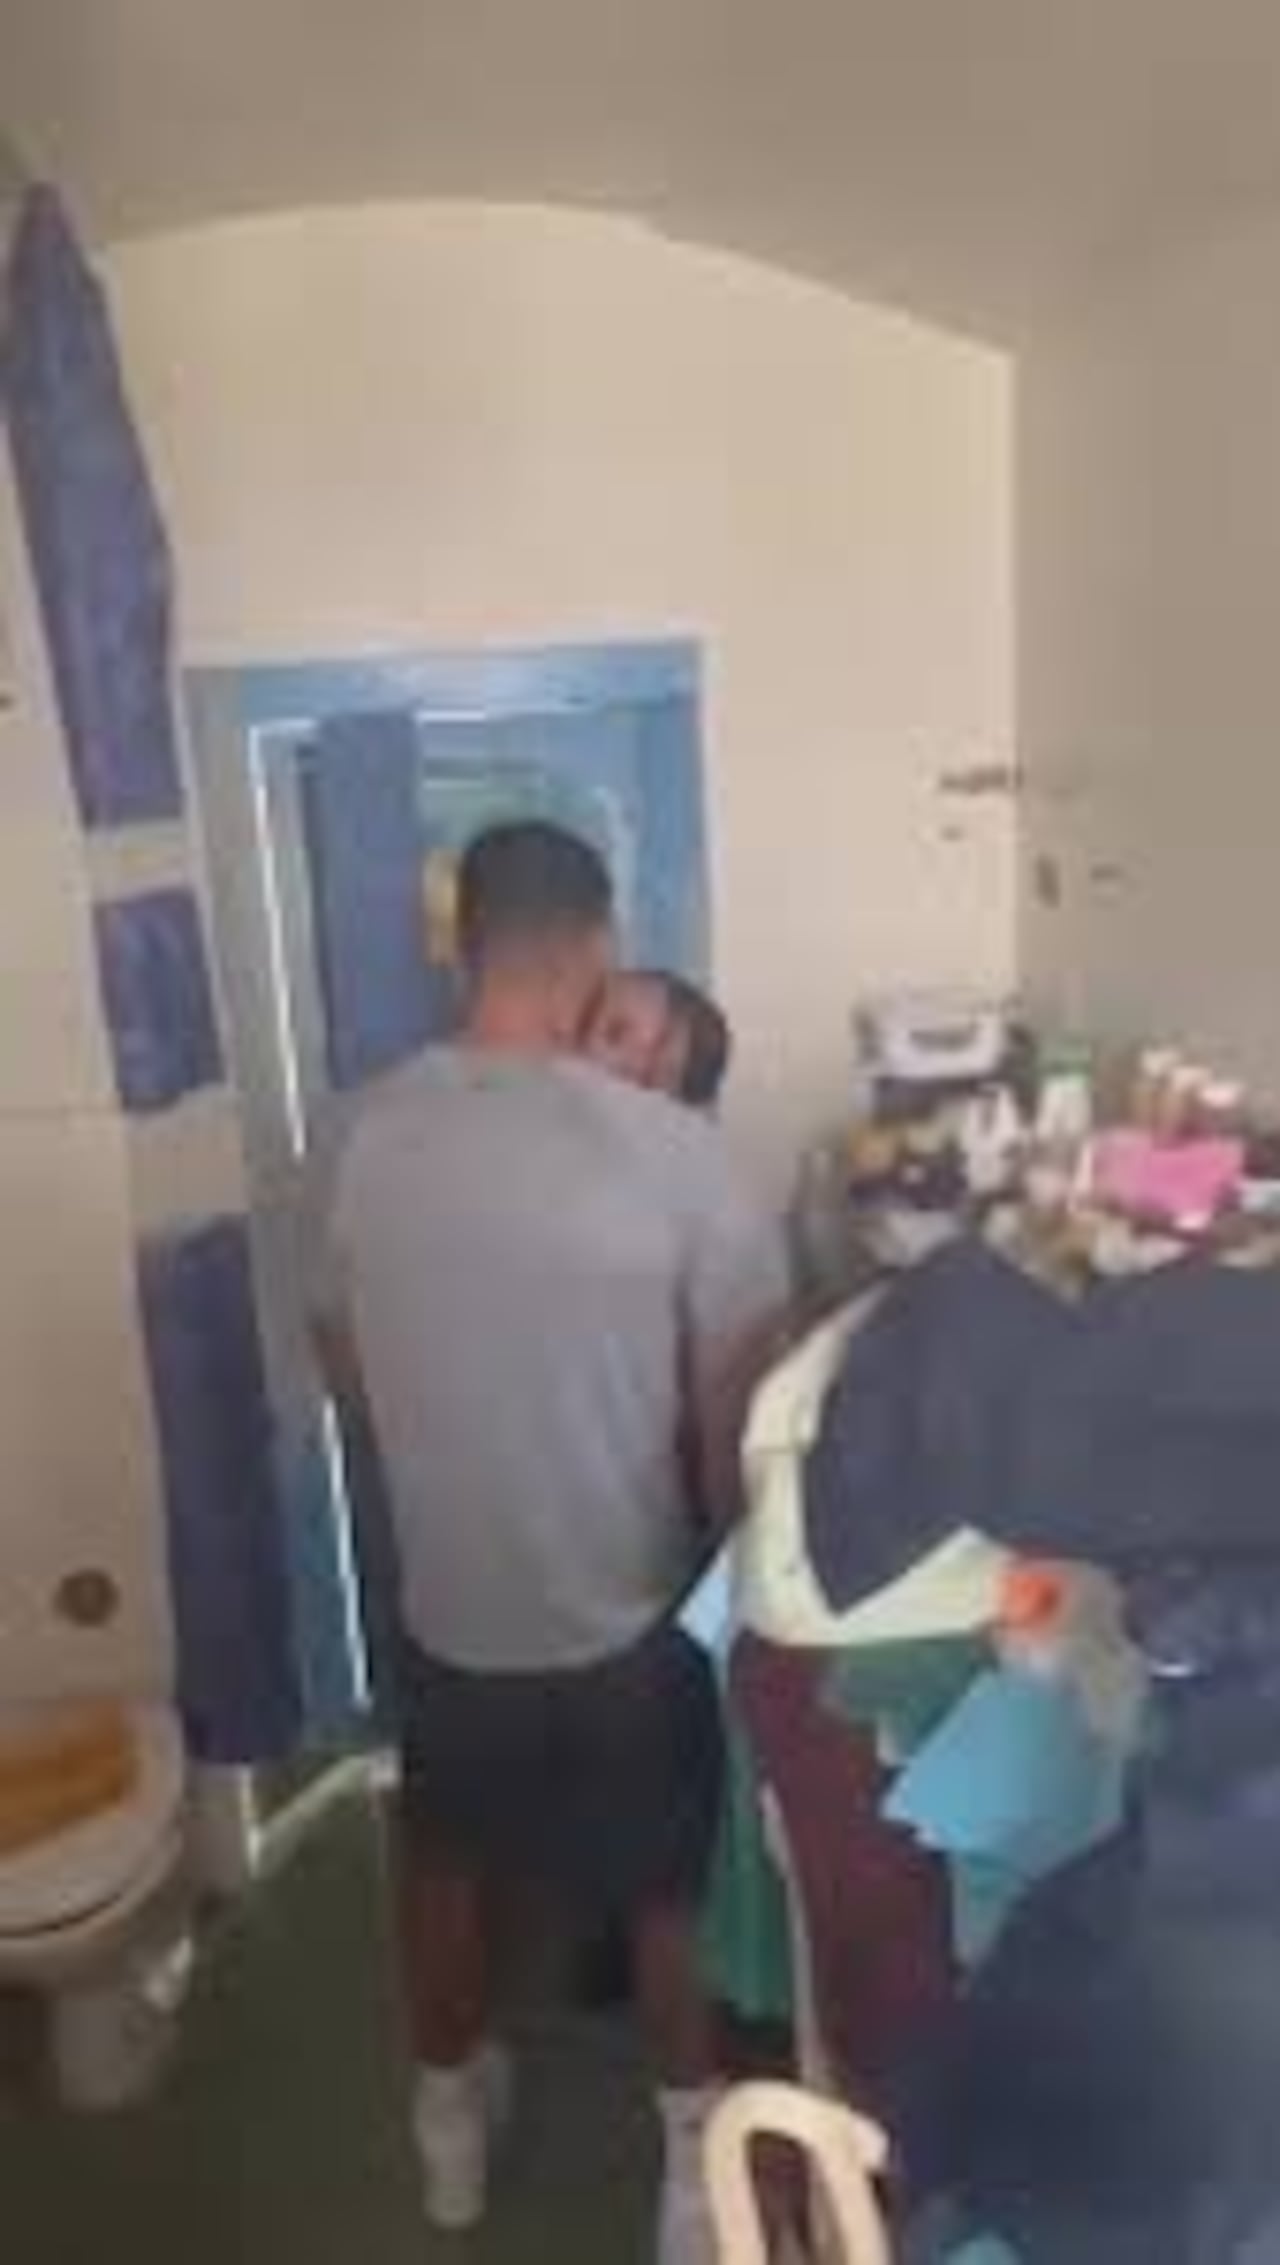 En el video se puede ver a la mujer sosteniendo relaciones sexuales en una selda de la prisión del Reino Unido